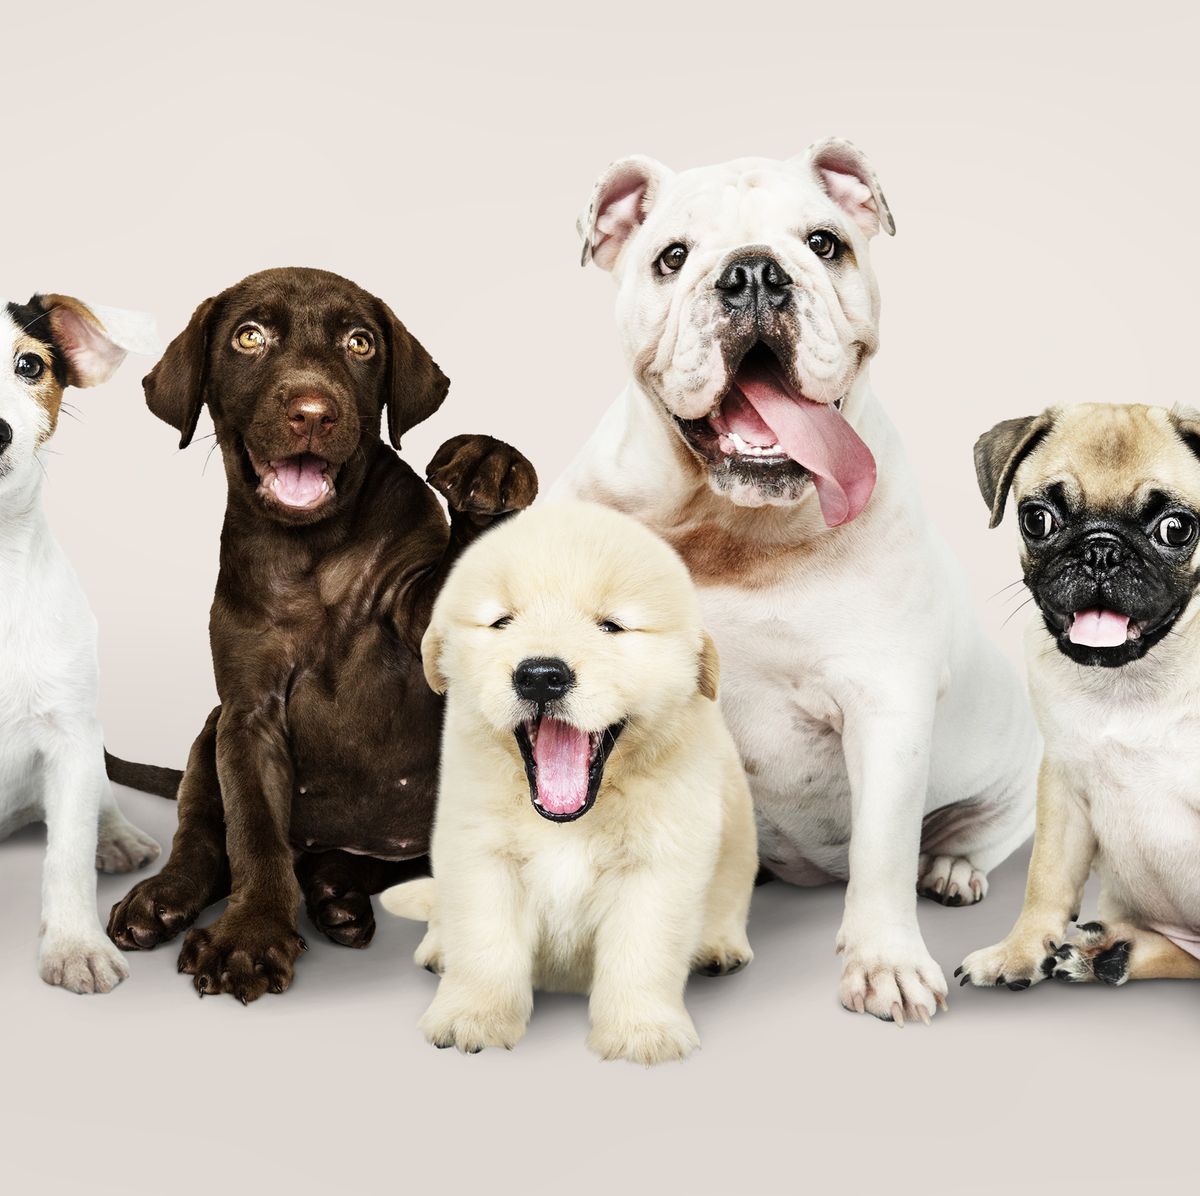 Most Popular Dog Breeds — America's Favorite Dog Breeds